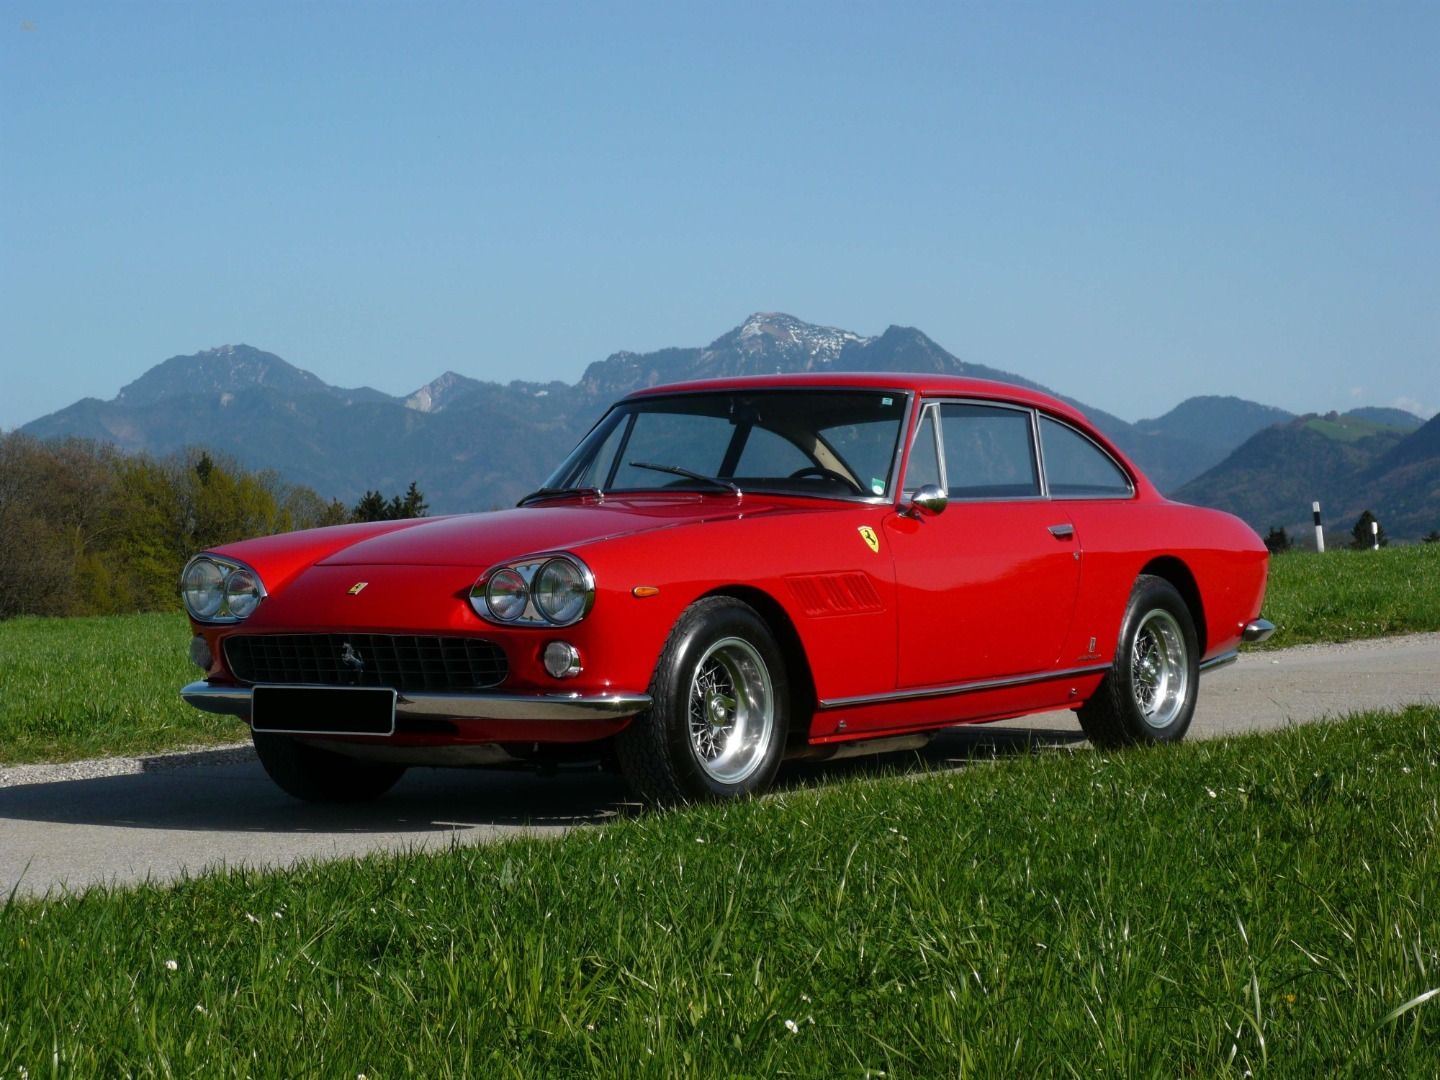 car-16640-Ferrari3301.jpg